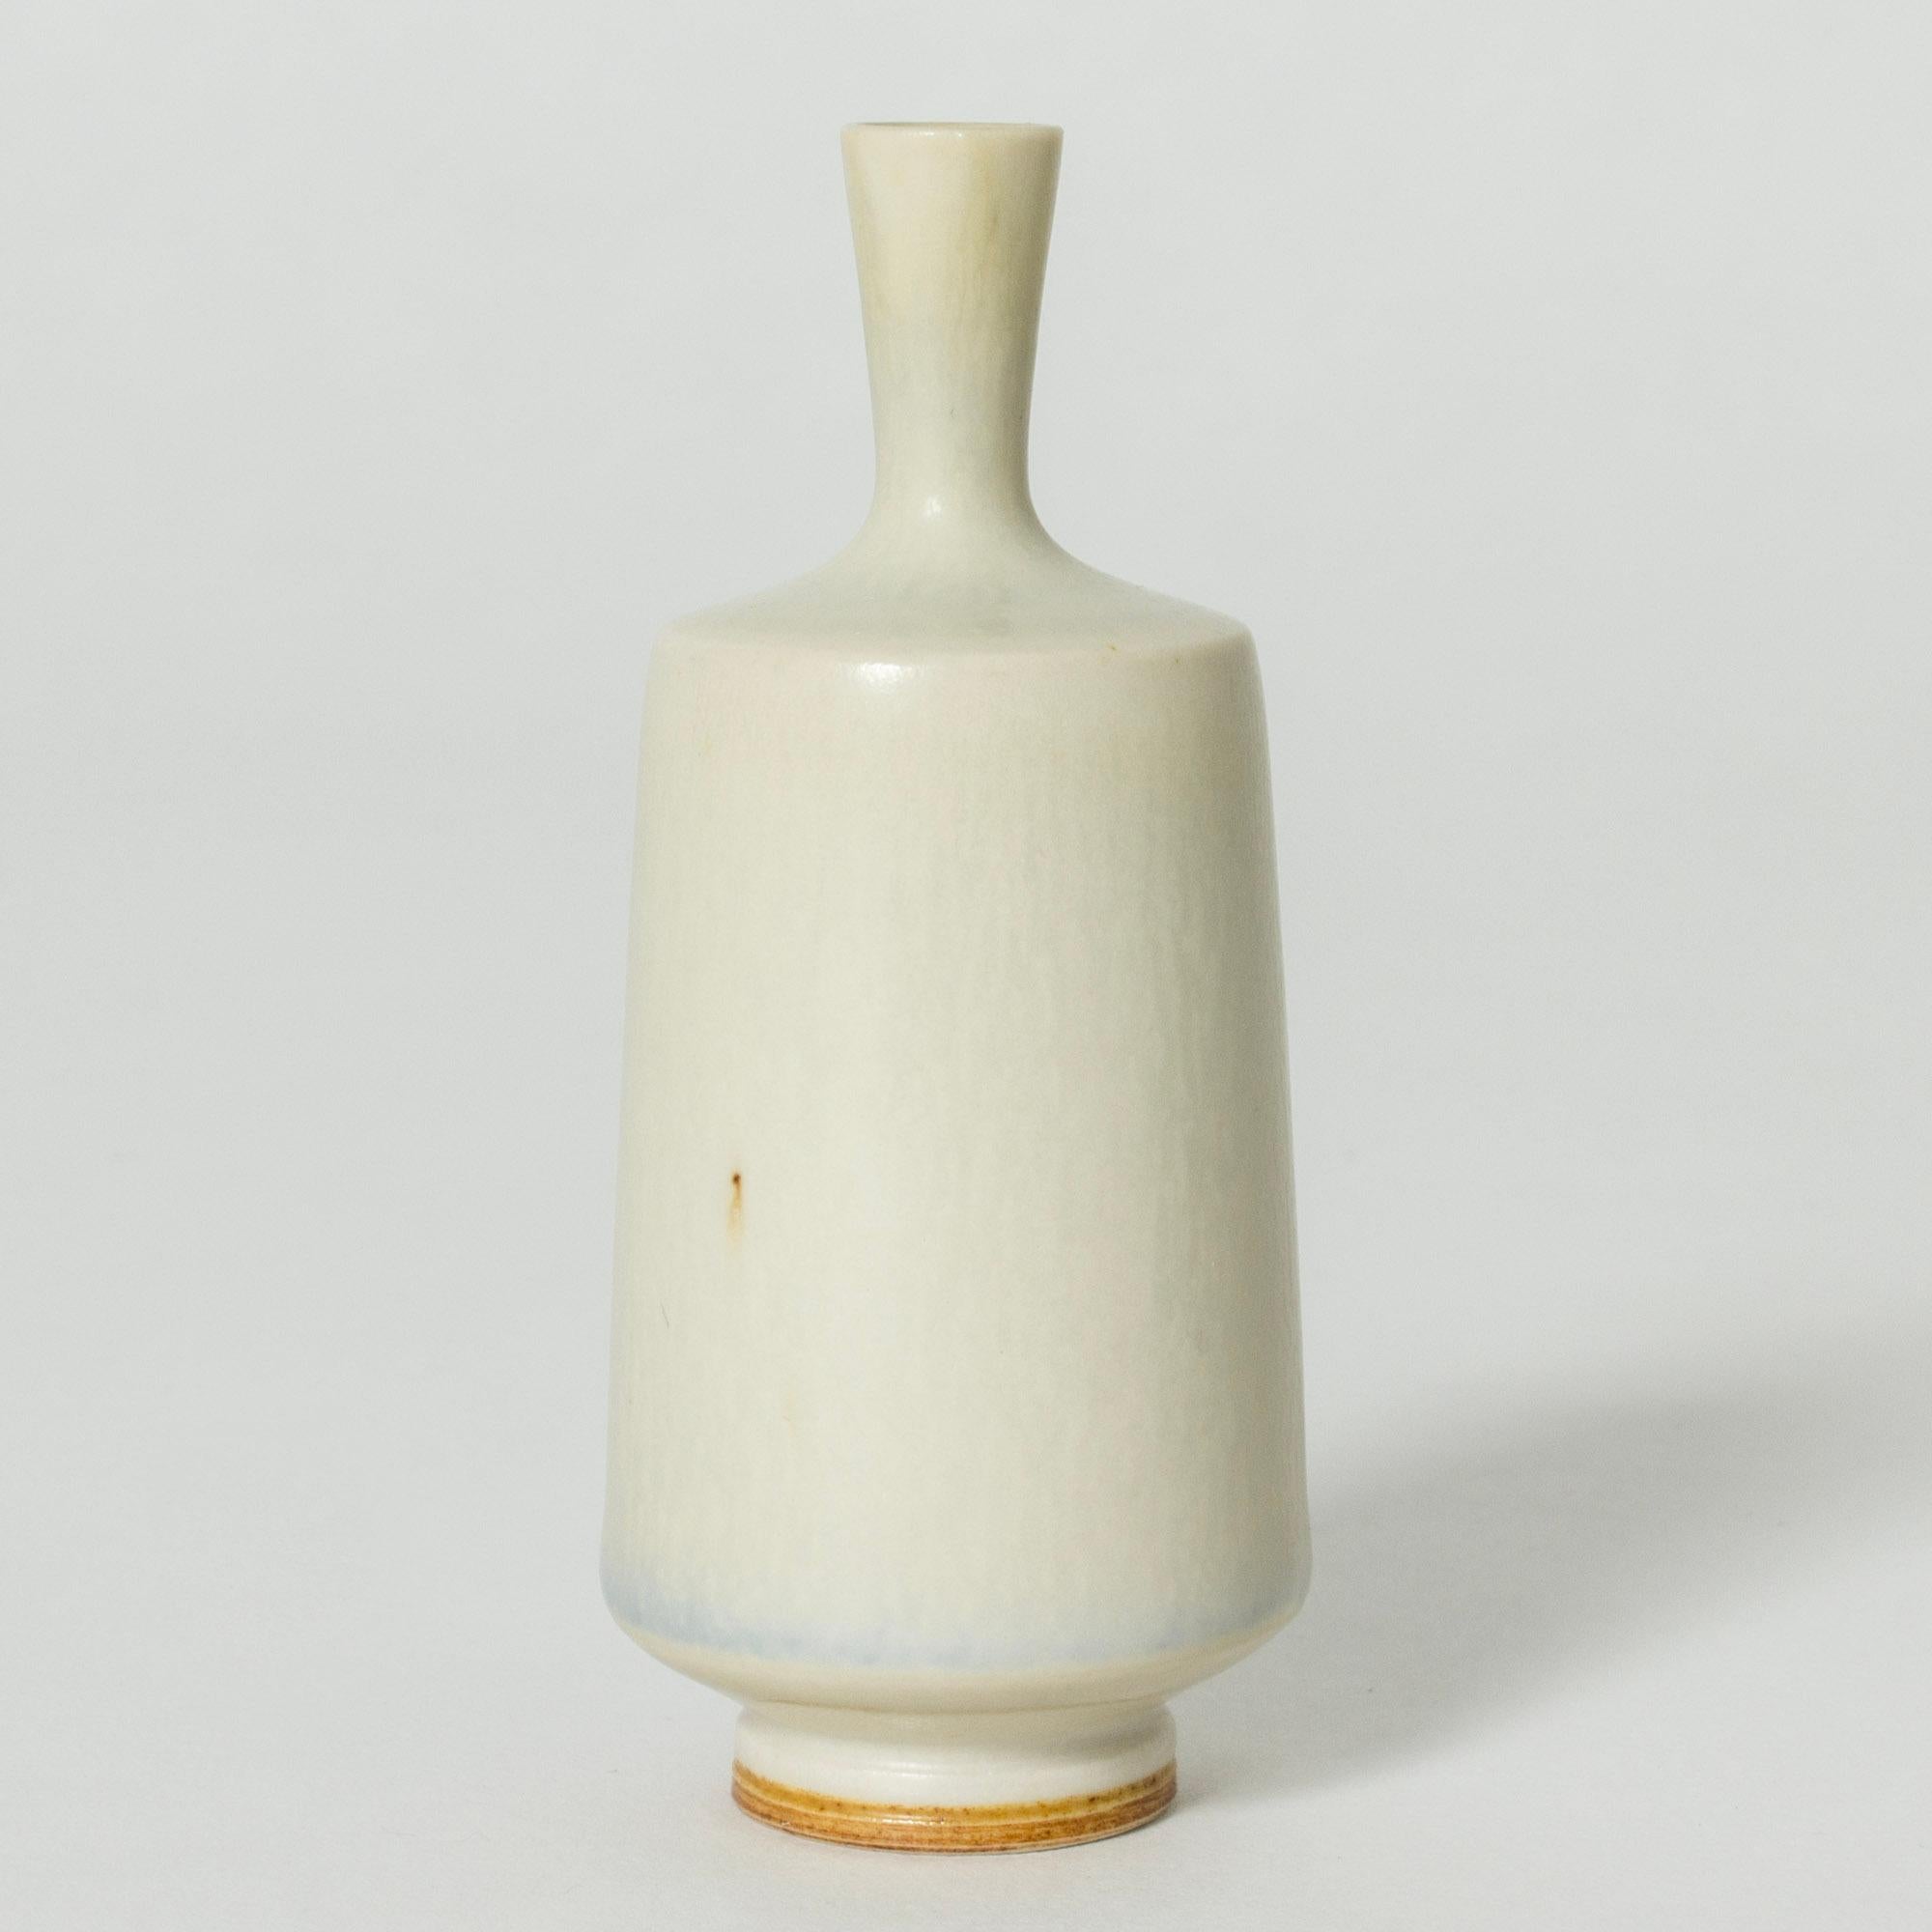 Vase miniature en grès de Berndt Whiting, de forme cylindrique épurée, avec une glaçure blanche en forme de fourrure de lièvre. Les vases blancs de Whiting sont particulièrement rares et recherchés.

Berndt Friberg était un céramiste suédois,